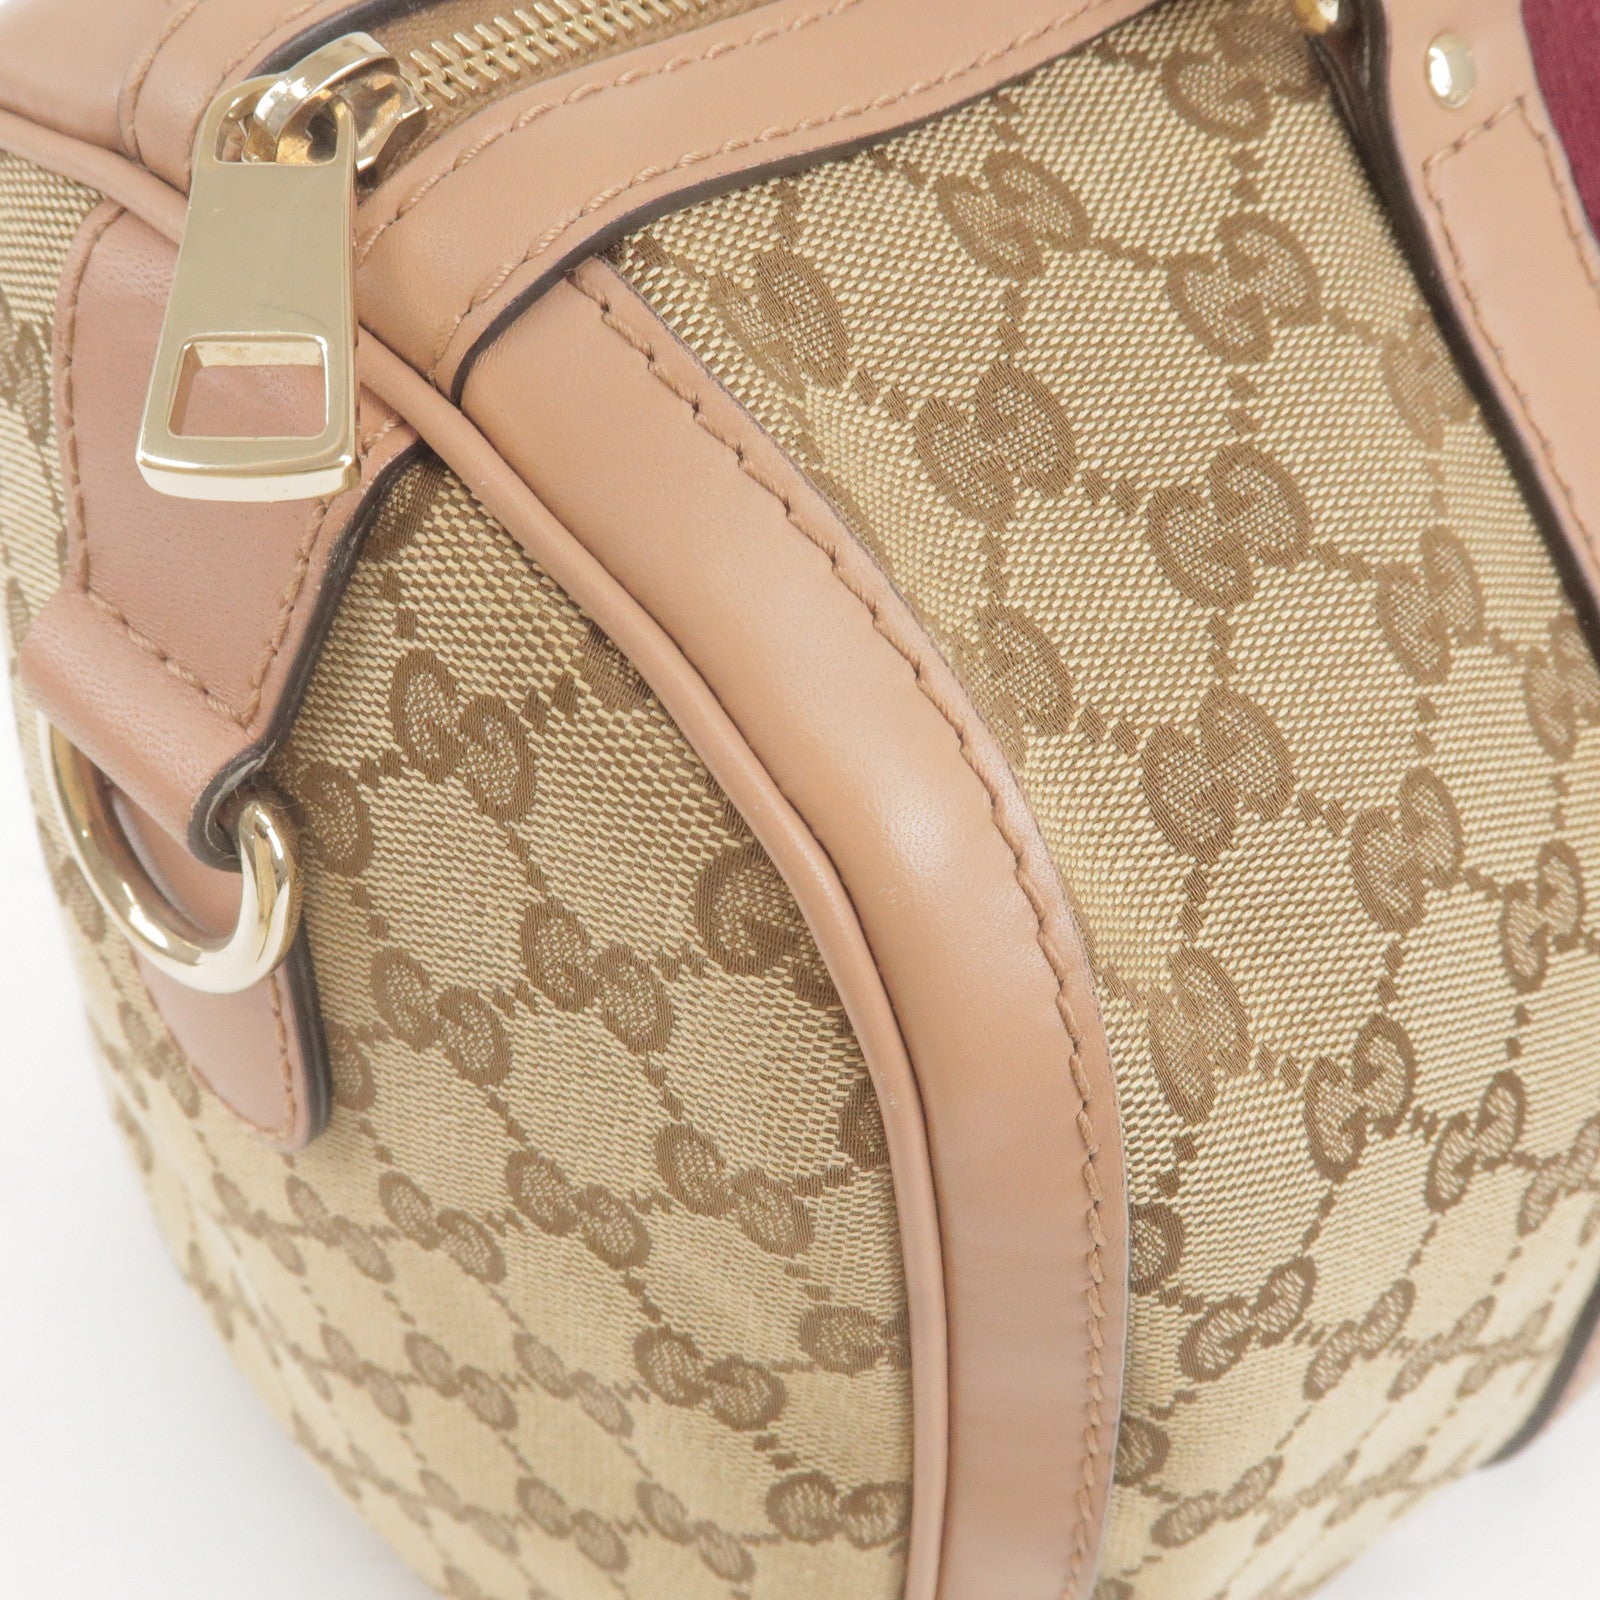 Gucci Boston Bag with Strap